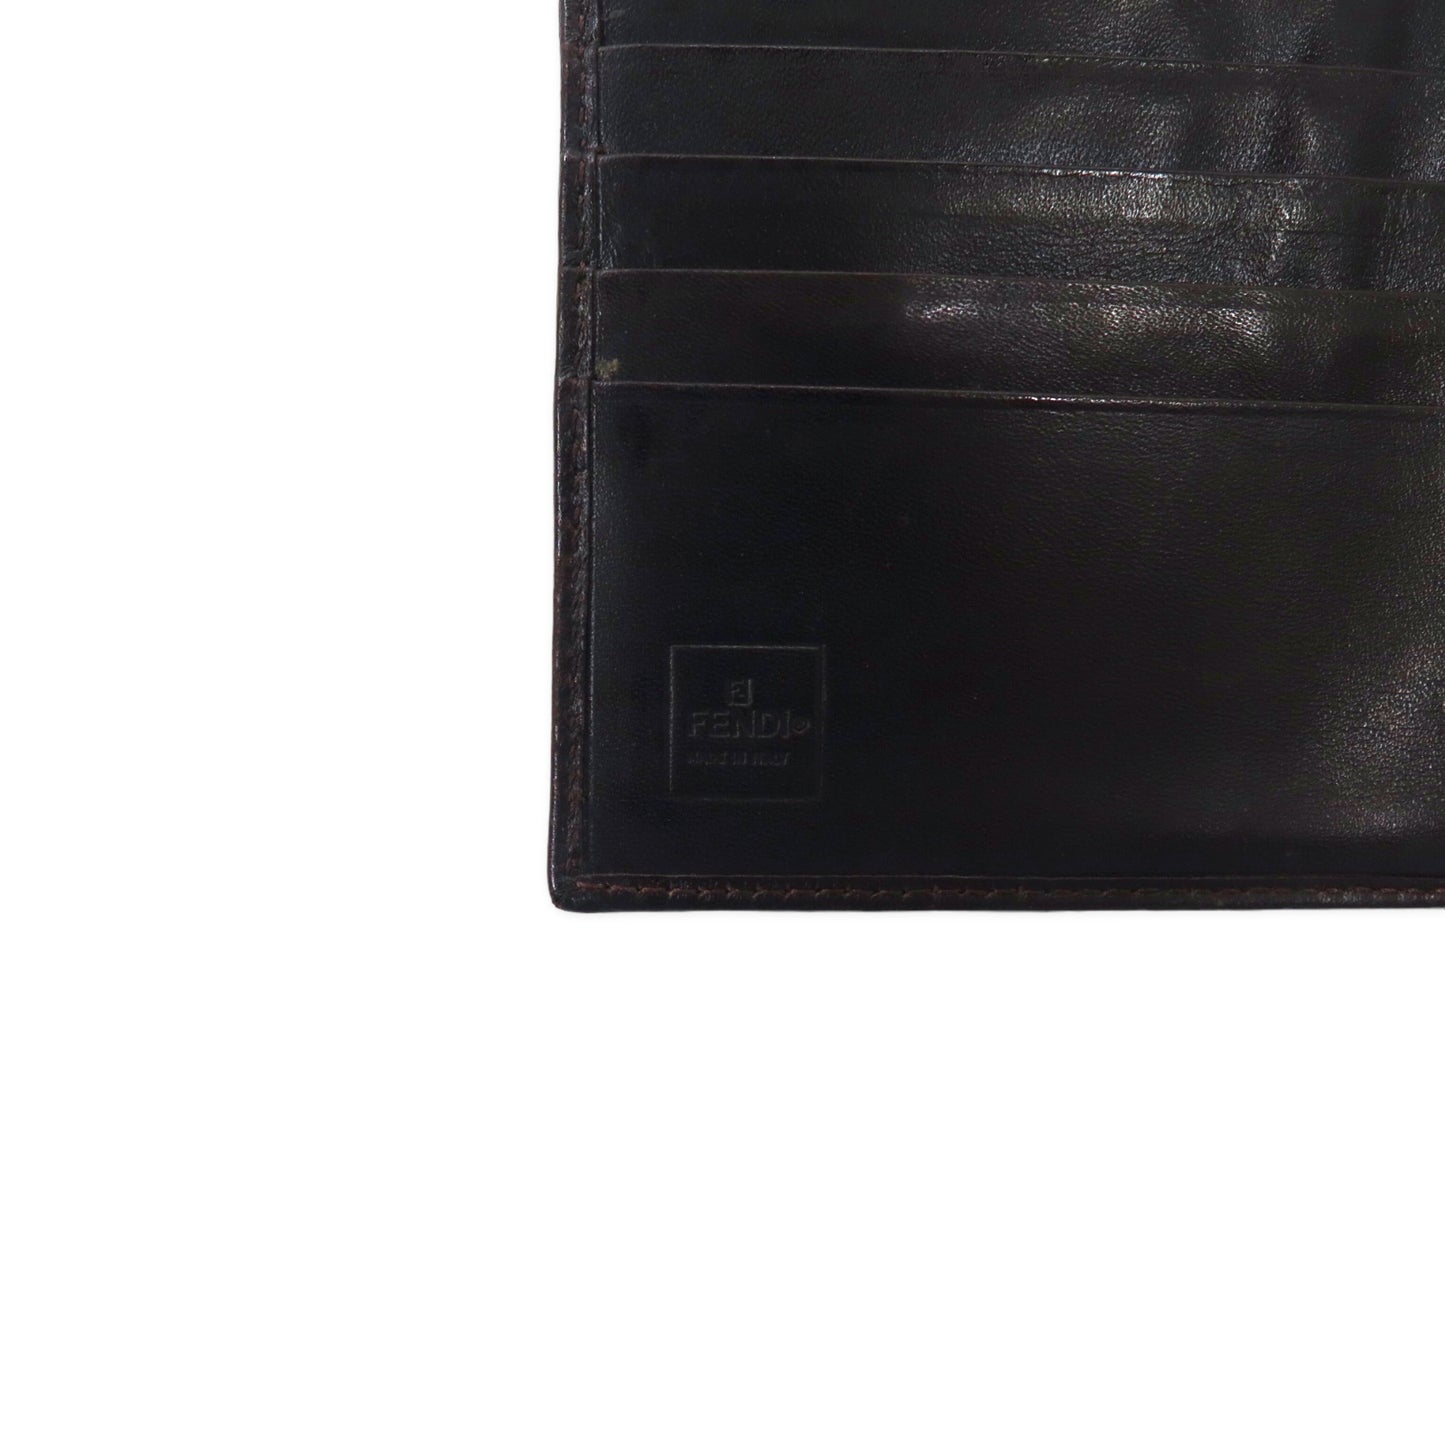 FENDI ズッカ 2つ折り財布 コンパクトウォレット ブラウン レザー キャンバス 2289 01695 009 オールド イタリア製